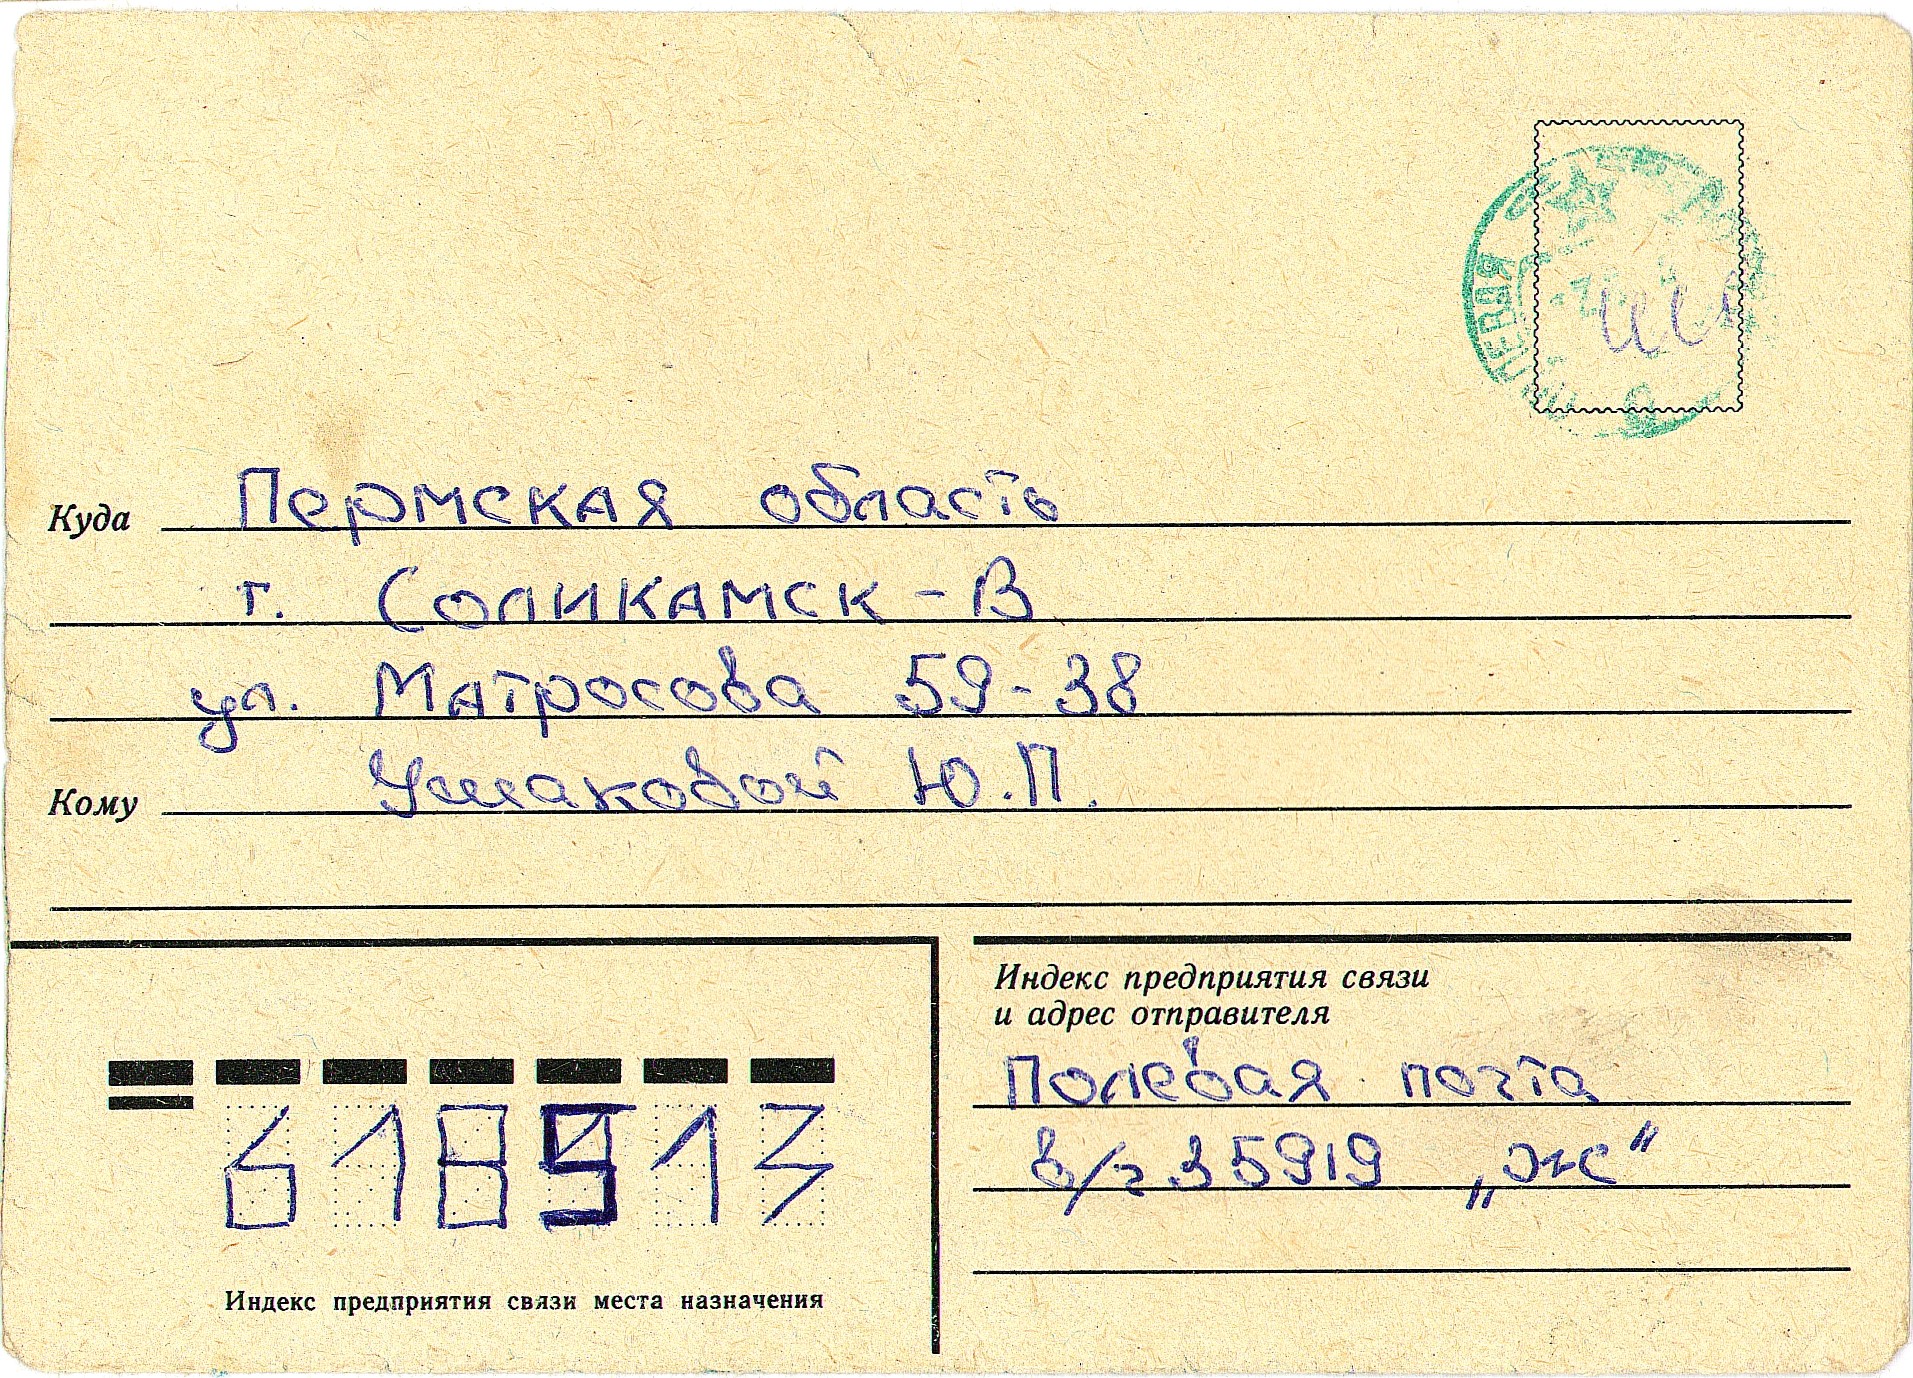 Почтовый адрес кирова